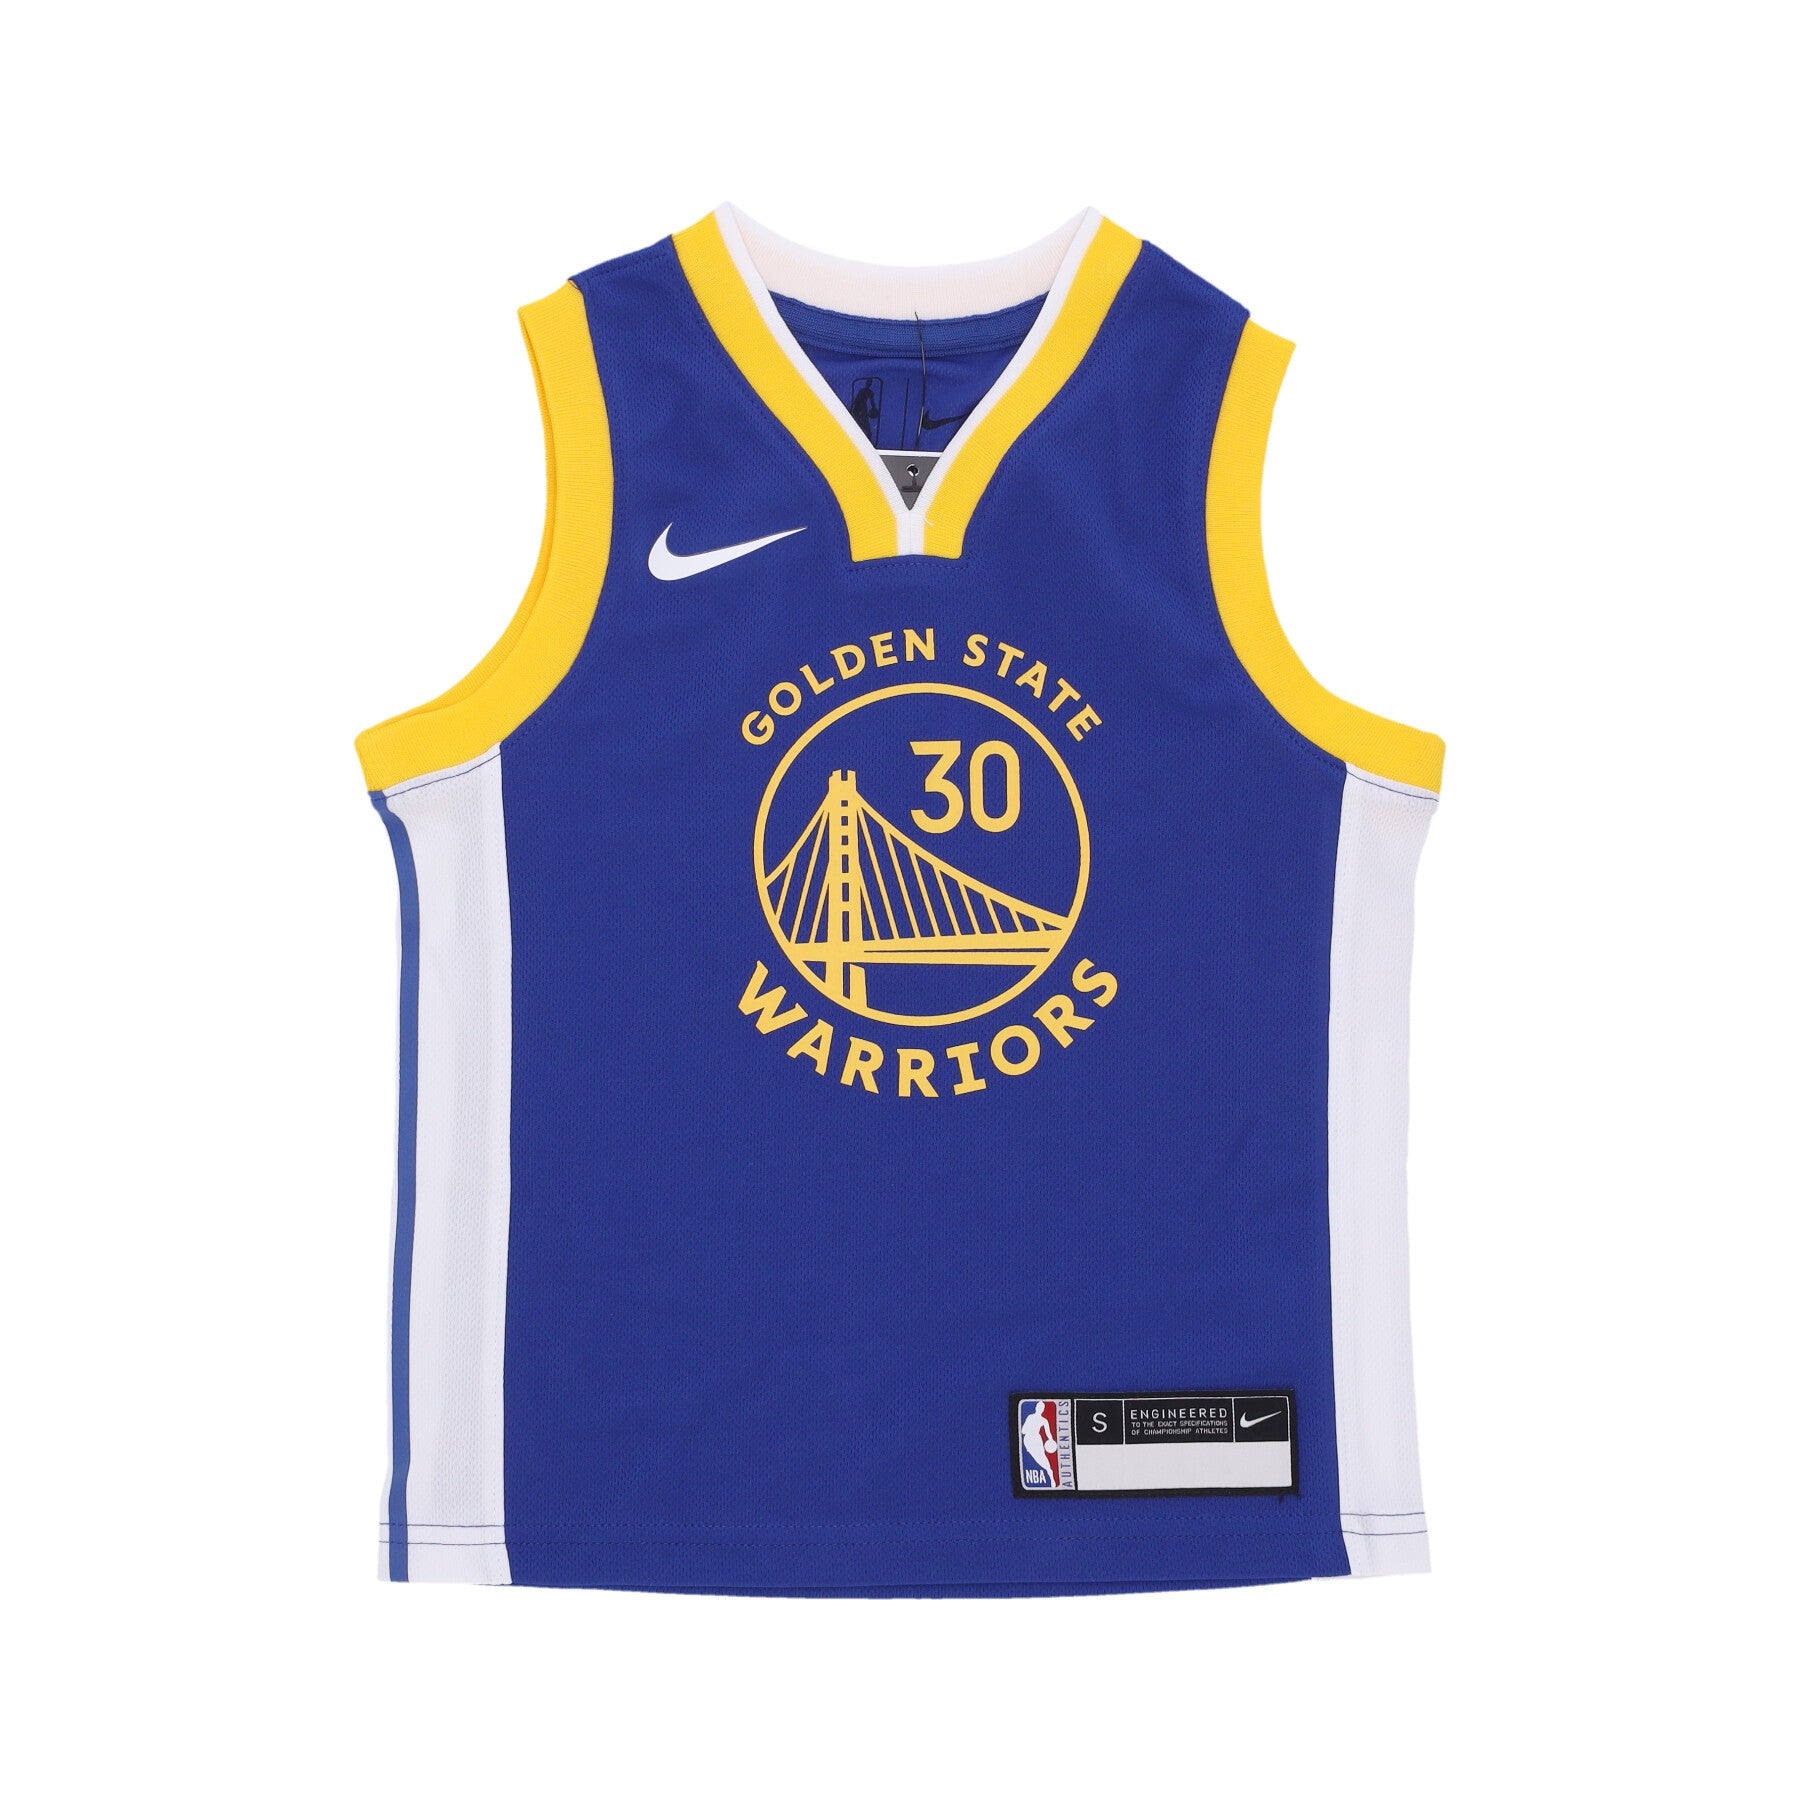 Nike Nba, Canotta Basket Bambino Nba Icon Edition Replica Jersey No 30 Stephen Curry Golwar, Original Team Colors